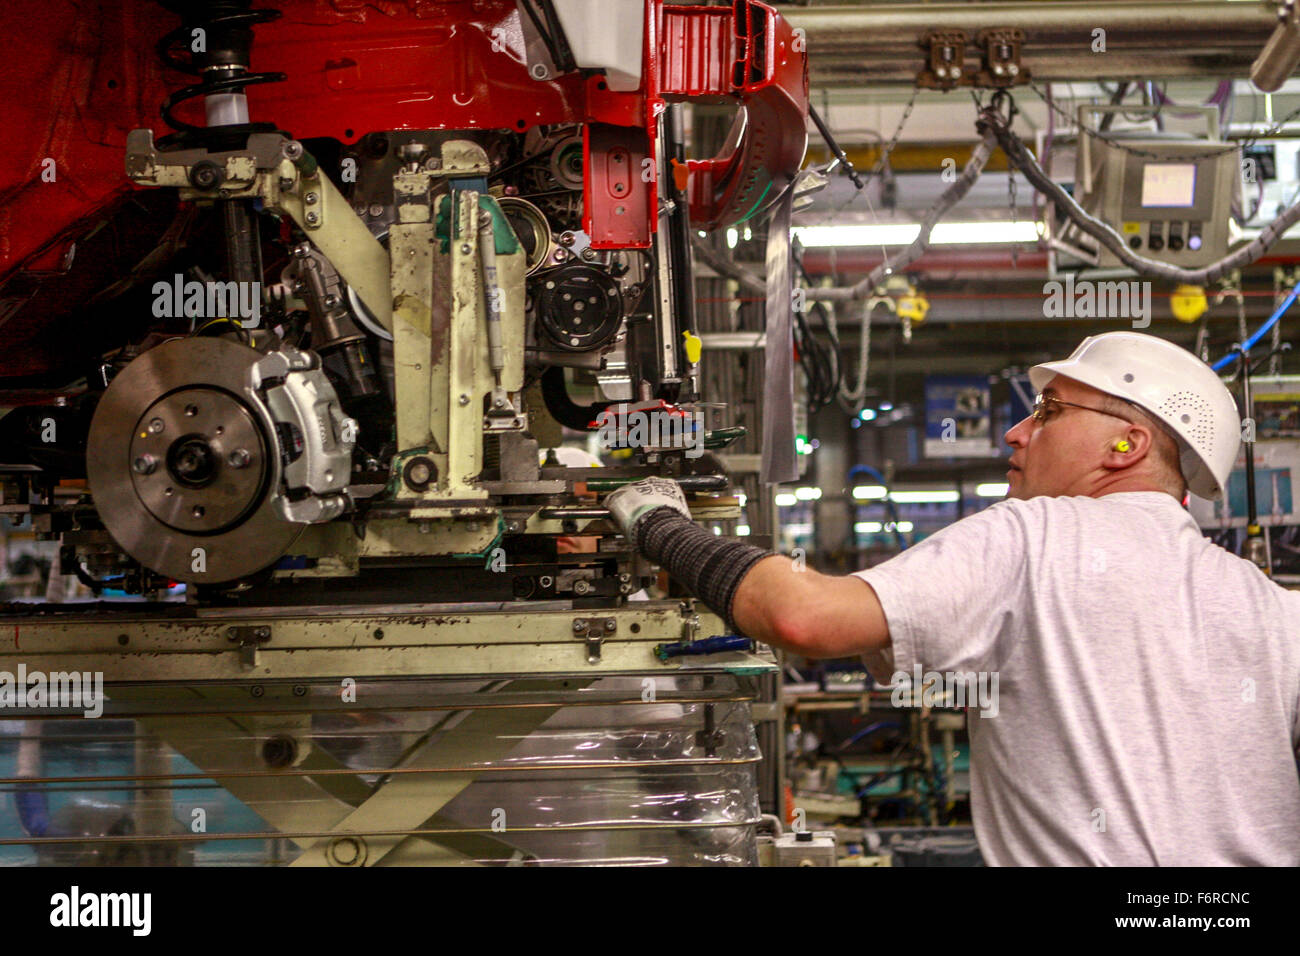 TPCA (Toyota Peugeot Citroën Automobile) Automotive assembly line factory  Czech Republic production line Stock Photo